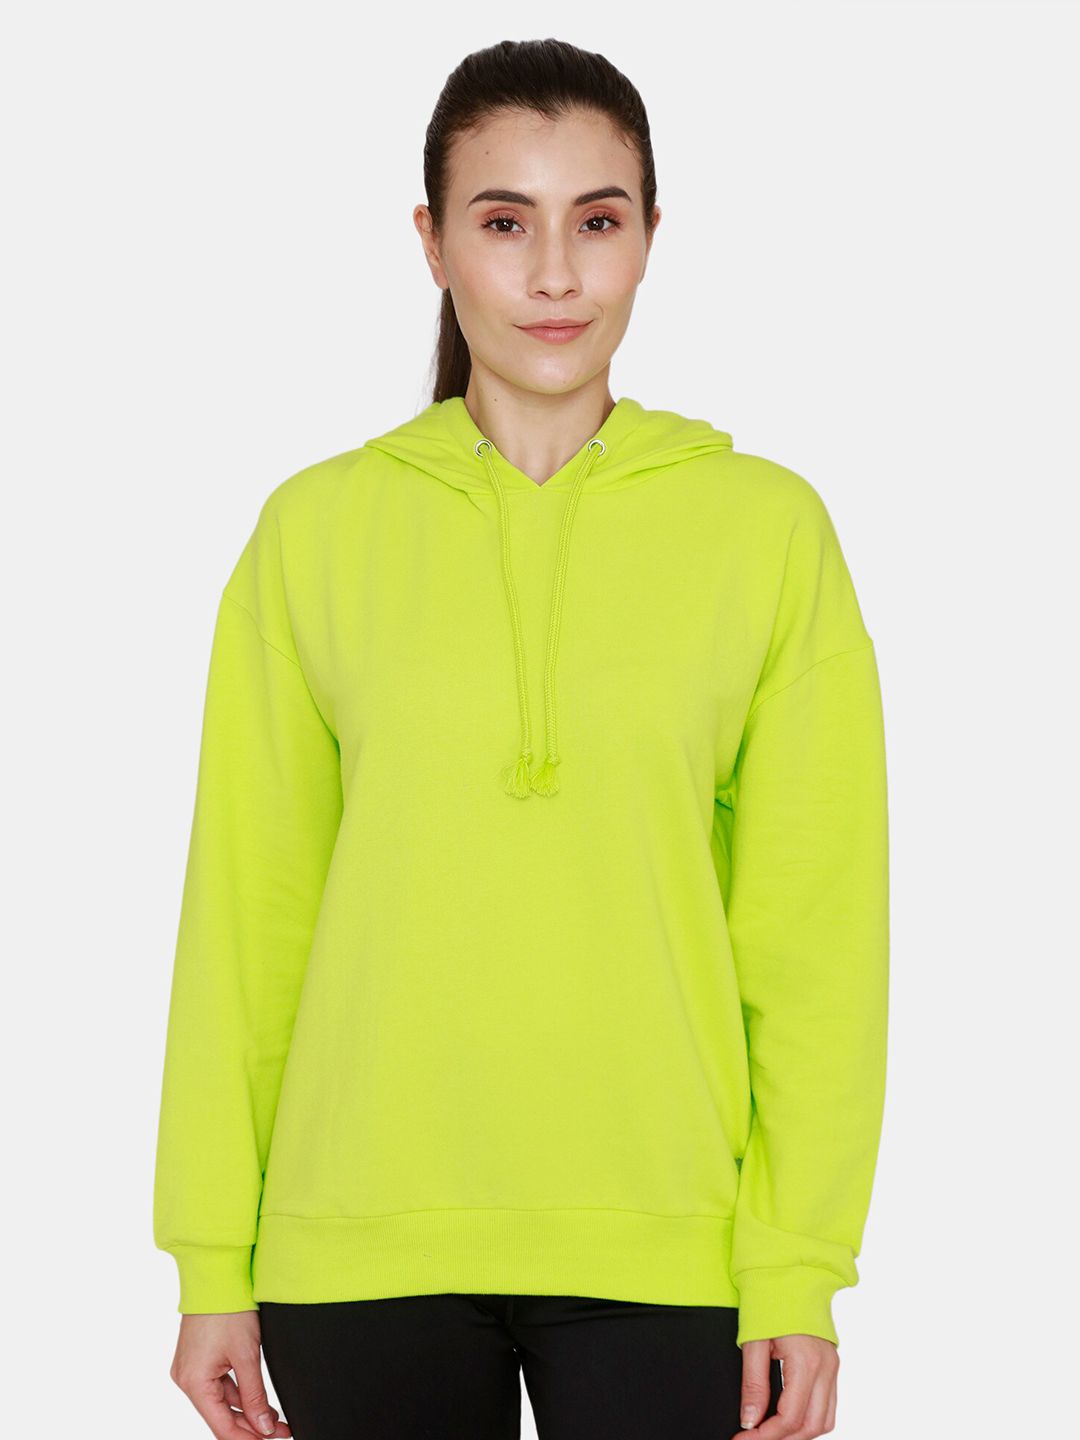 Zelocity by Zivame Women Yellow Sweatshirt Price in India